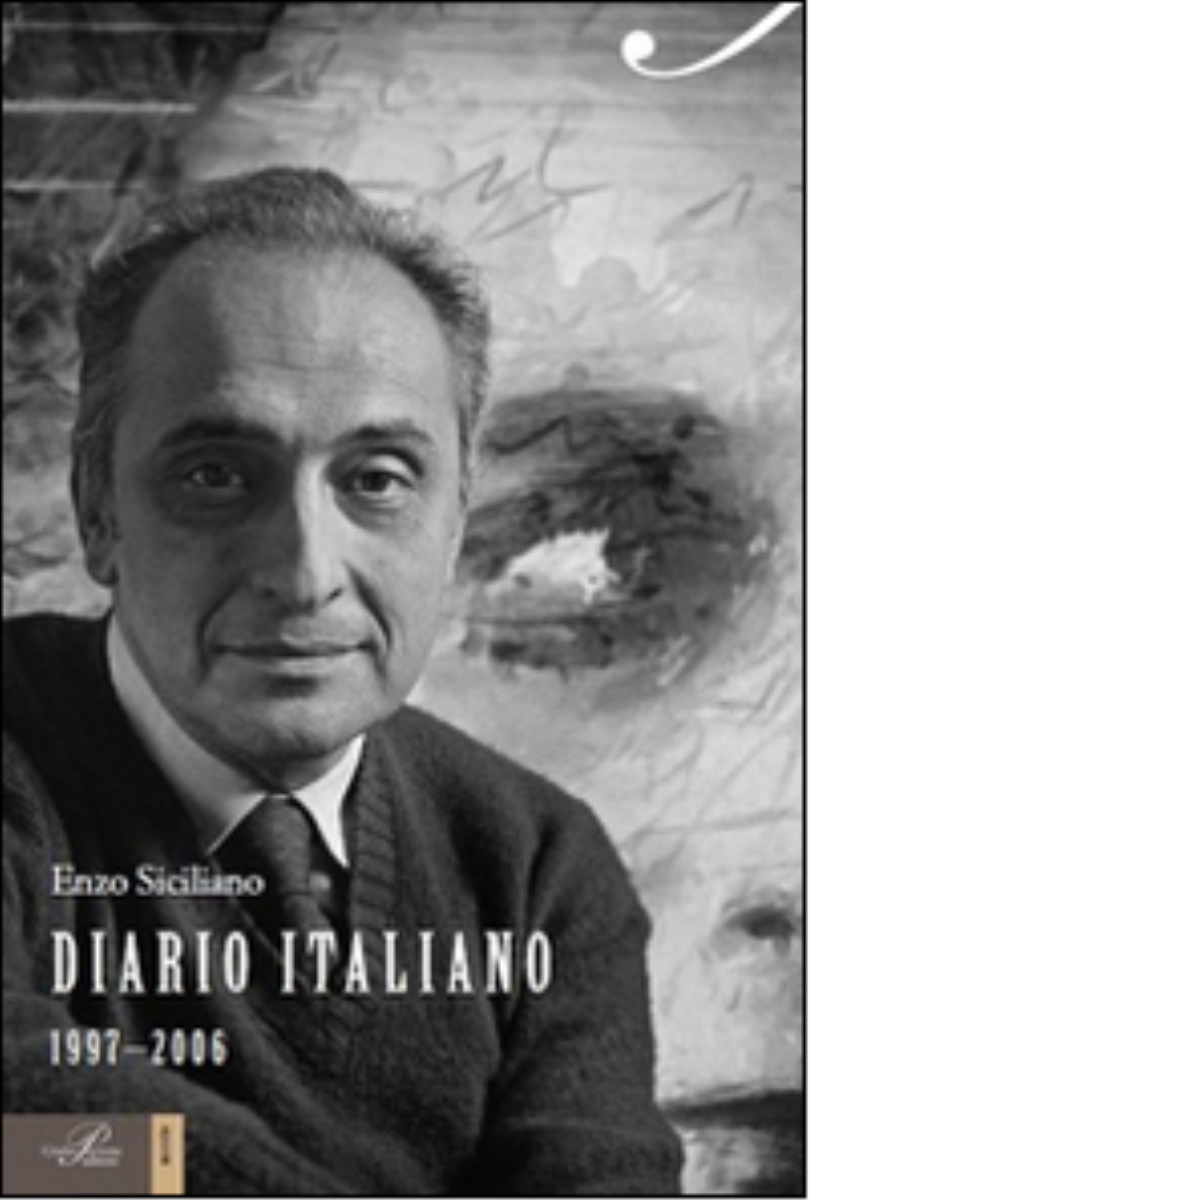 Diario italiano (1997-2006) - Siciliano Enzo - Perrone editore, 2014 libro usato